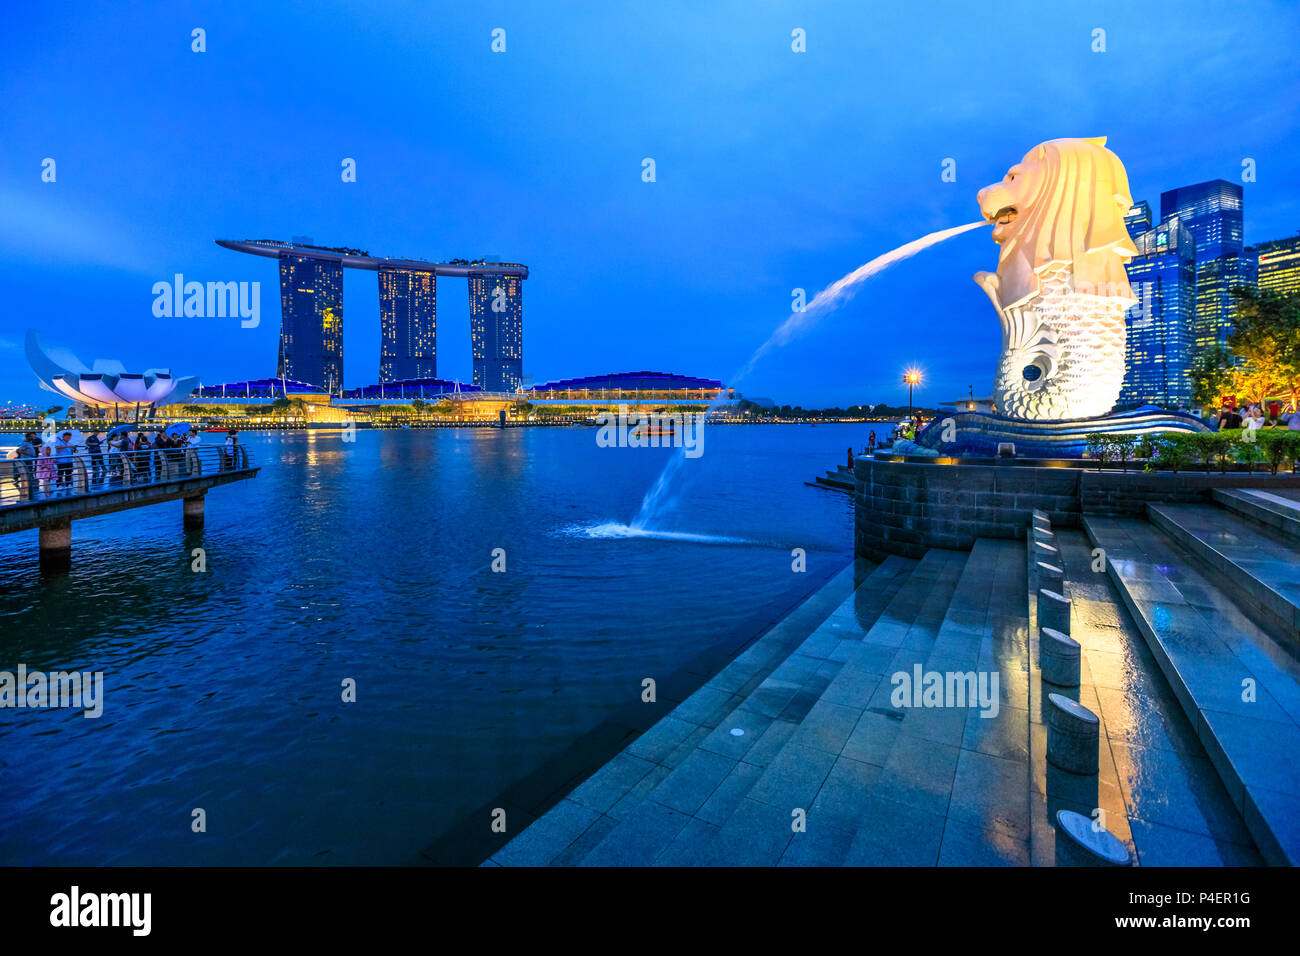 Singapur - Abril 27, 2018: reflexión estatua Merlion de Singapur en Marina Bay el mar. Merlion tiene una cabeza de león y cuerpo de pez y chorreando agua de su boca. Marina Bay Sands torres en el horizonte. Foto de stock